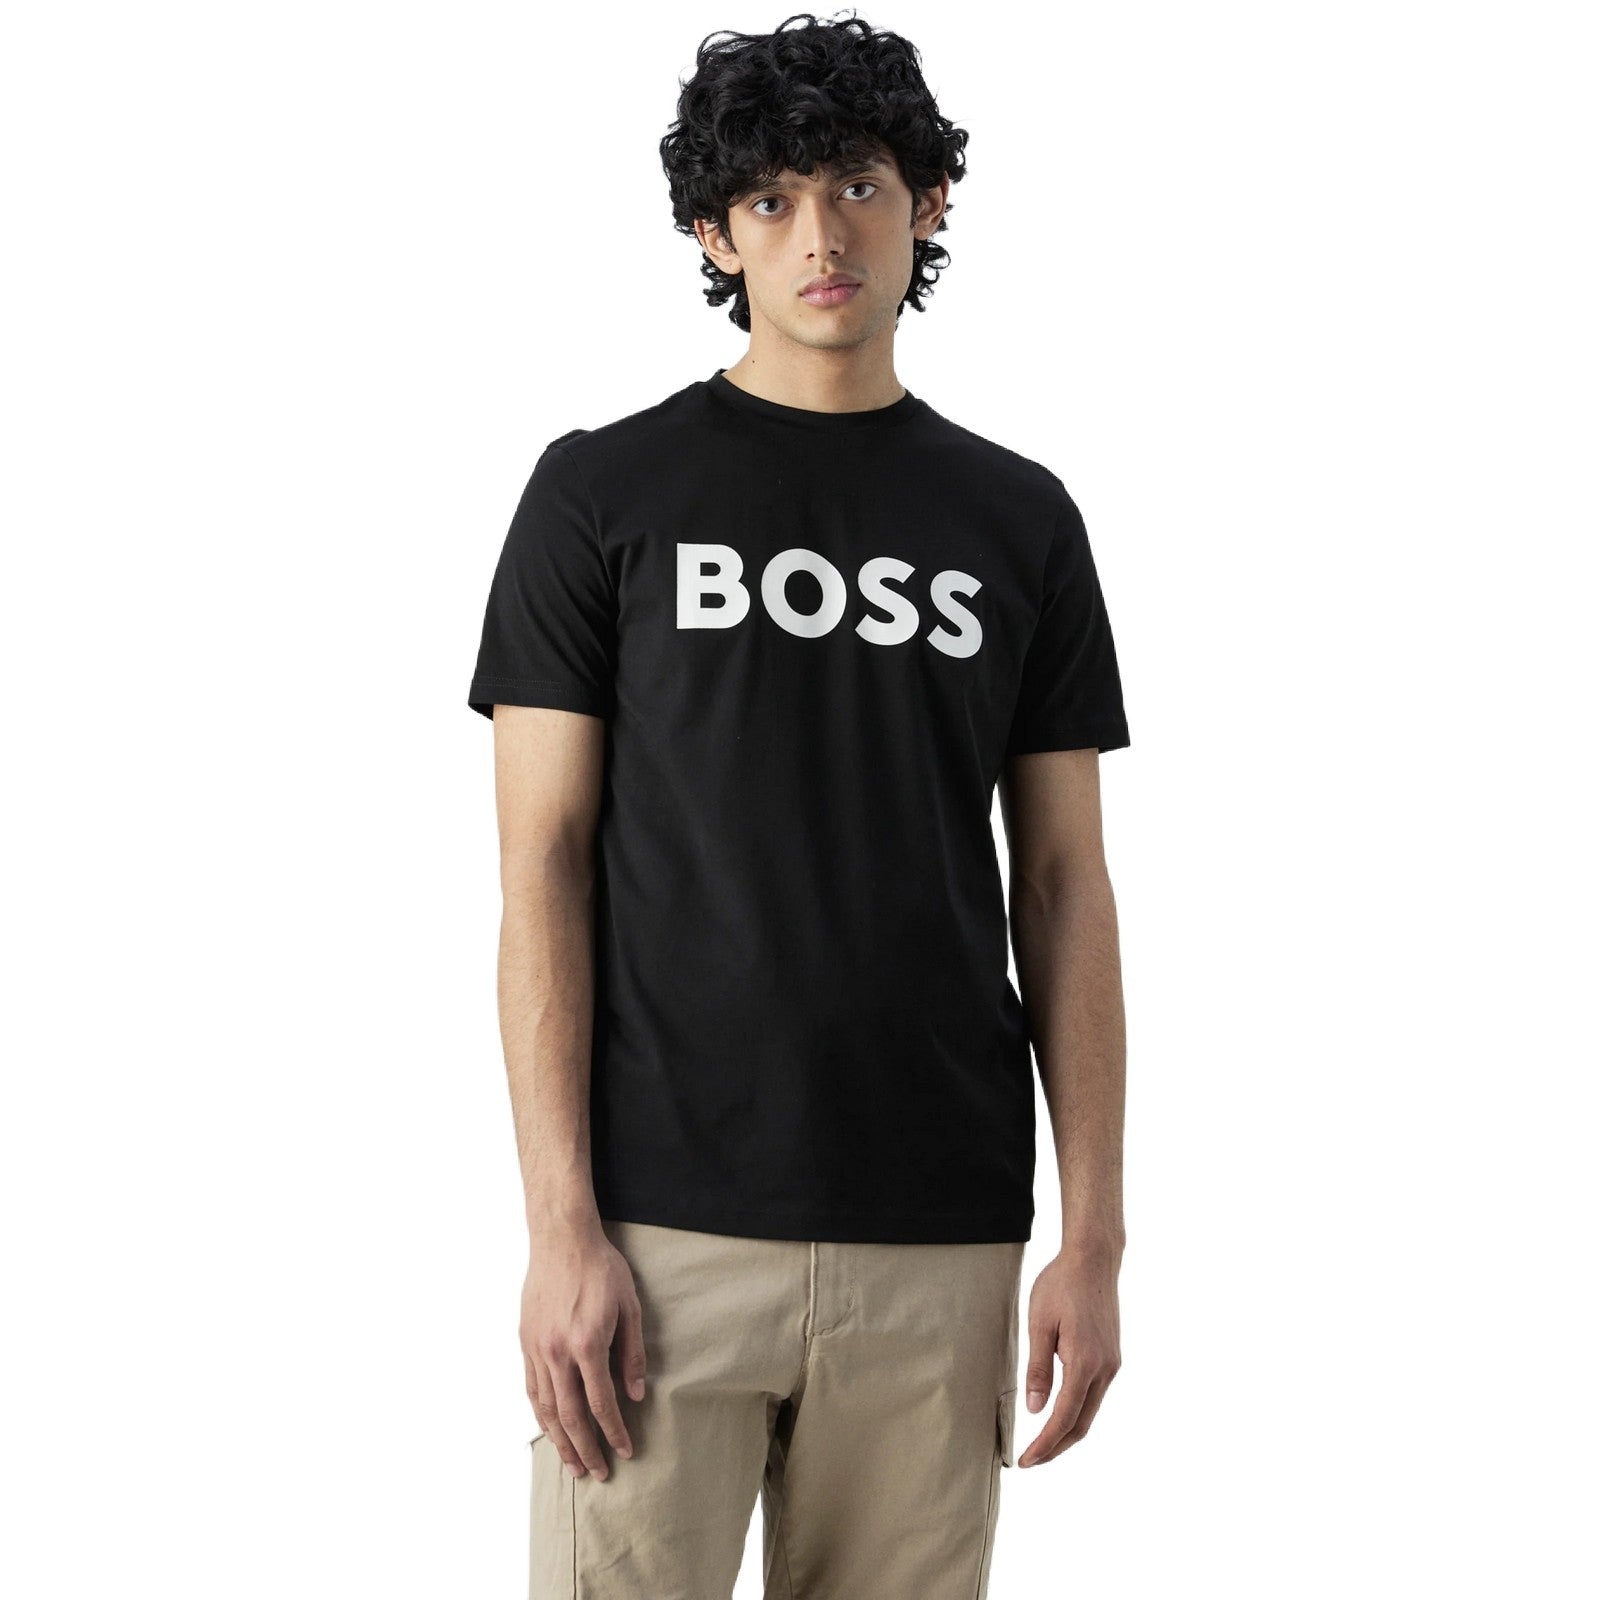 T-shirt Uomo Hugo Boss - Thinking 1 10246016 01 - Nero